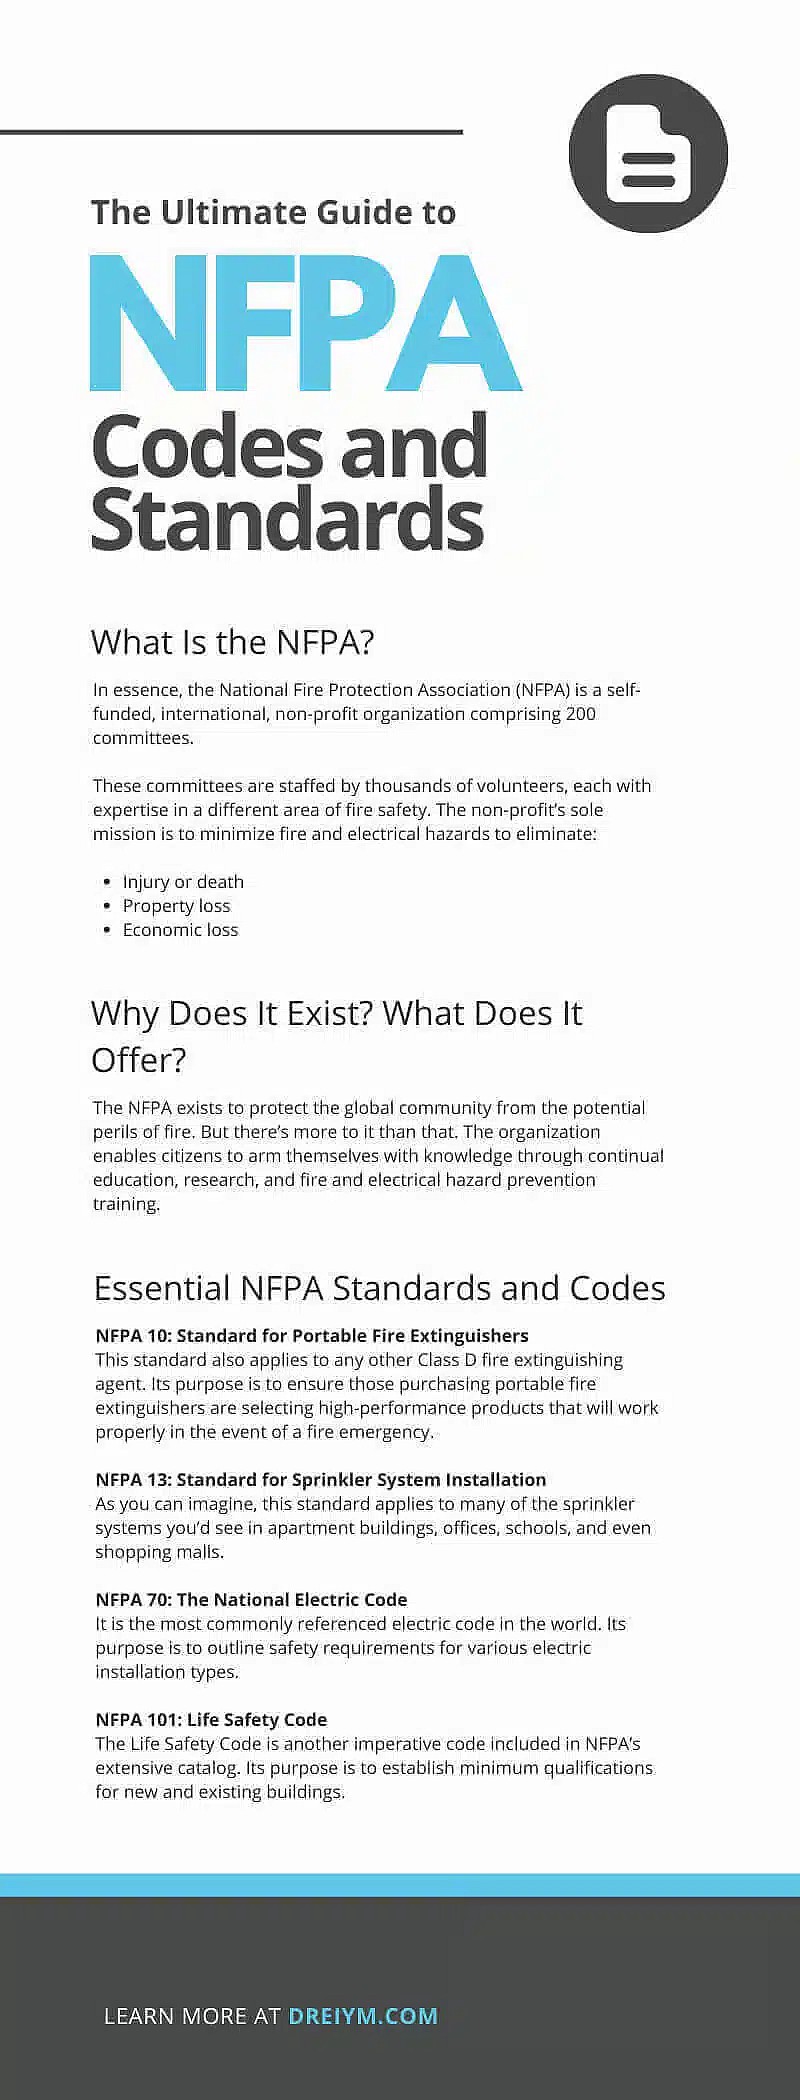 Le guide ultime des codes et normes NFPA